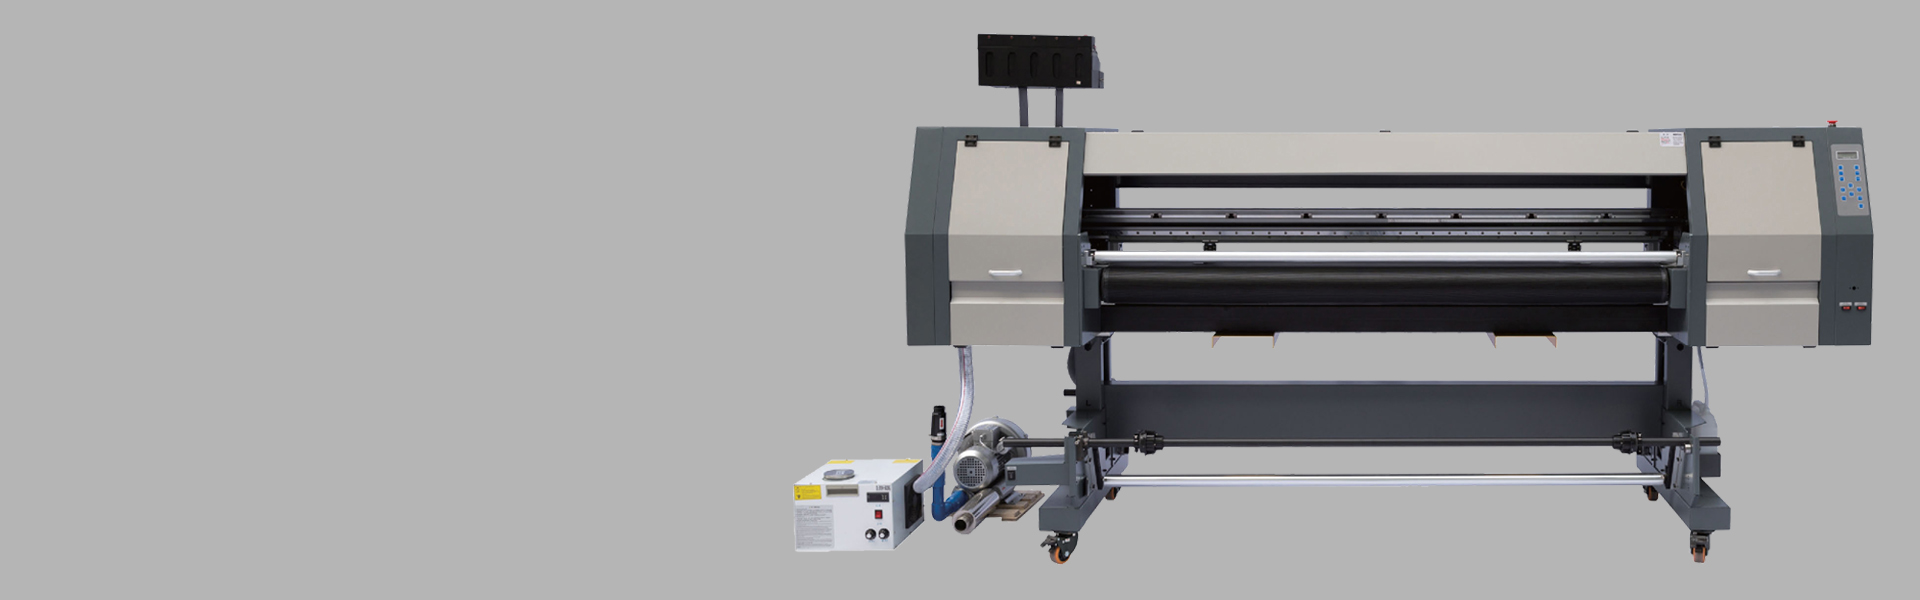 Hybrid UV printer